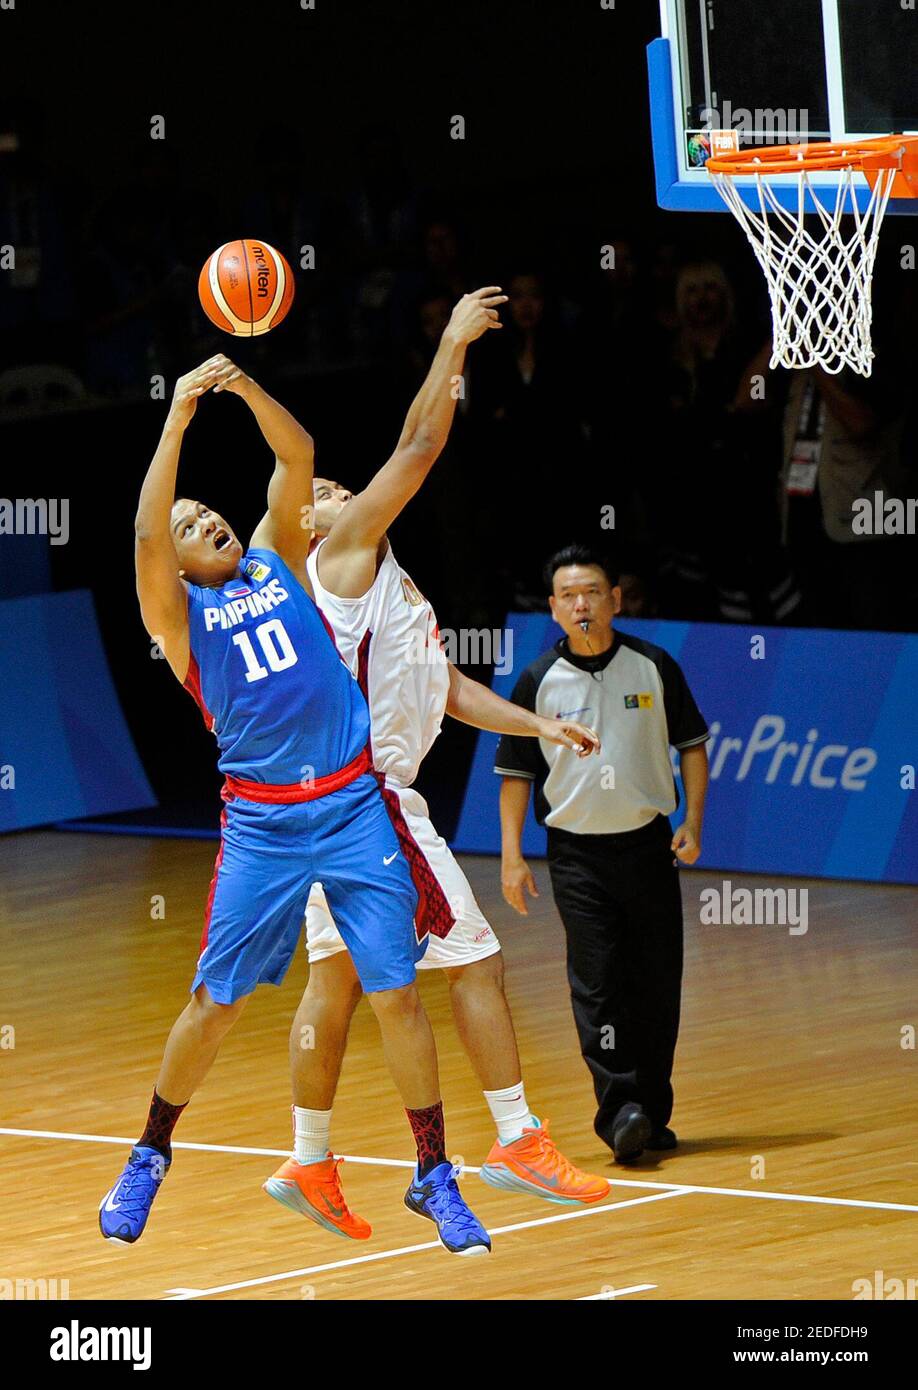 28th SEA Games Singapore 2015 - OCBC Arena Halle 1, Singapur - 10/6/15  Basketball - Vorrunde für Männer - Norberto Brian Torres (10) auf den  Philippinen im Einsatz mit Arki Dikania Wisnu